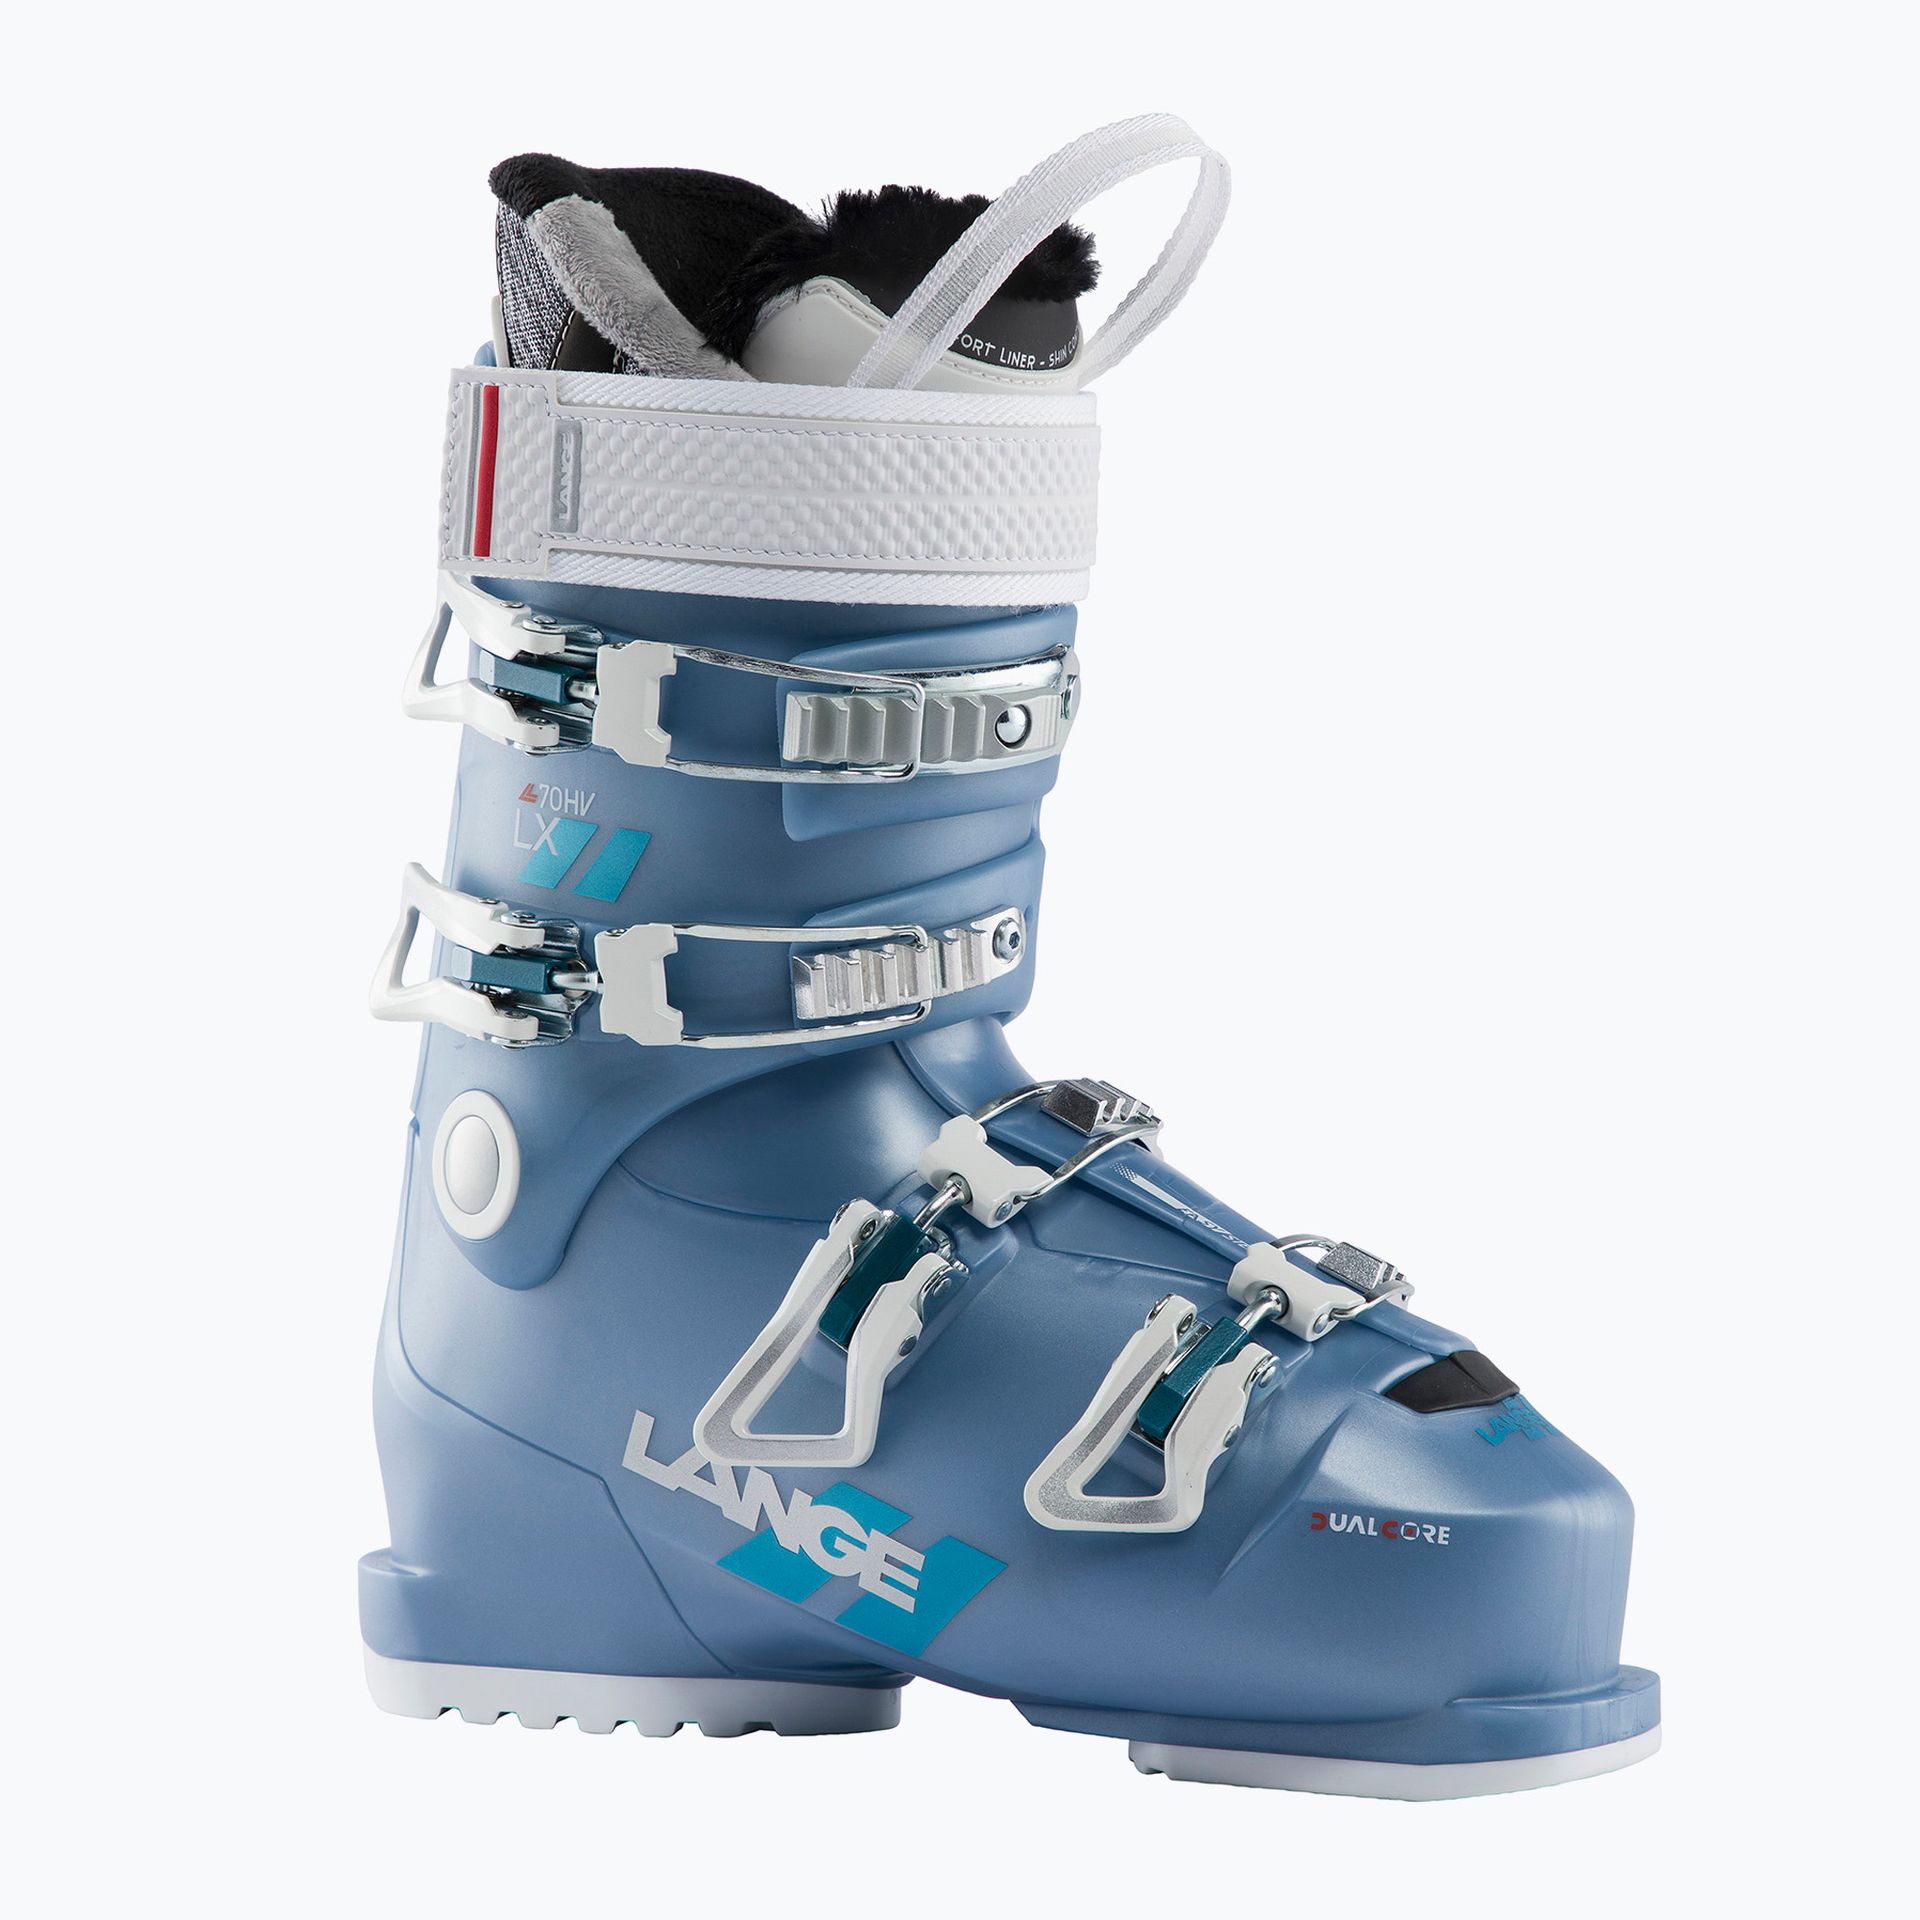 Buty narciarskie damskie Lange LX 70 W HV niebieskie LBL6260-235  26.5 cm